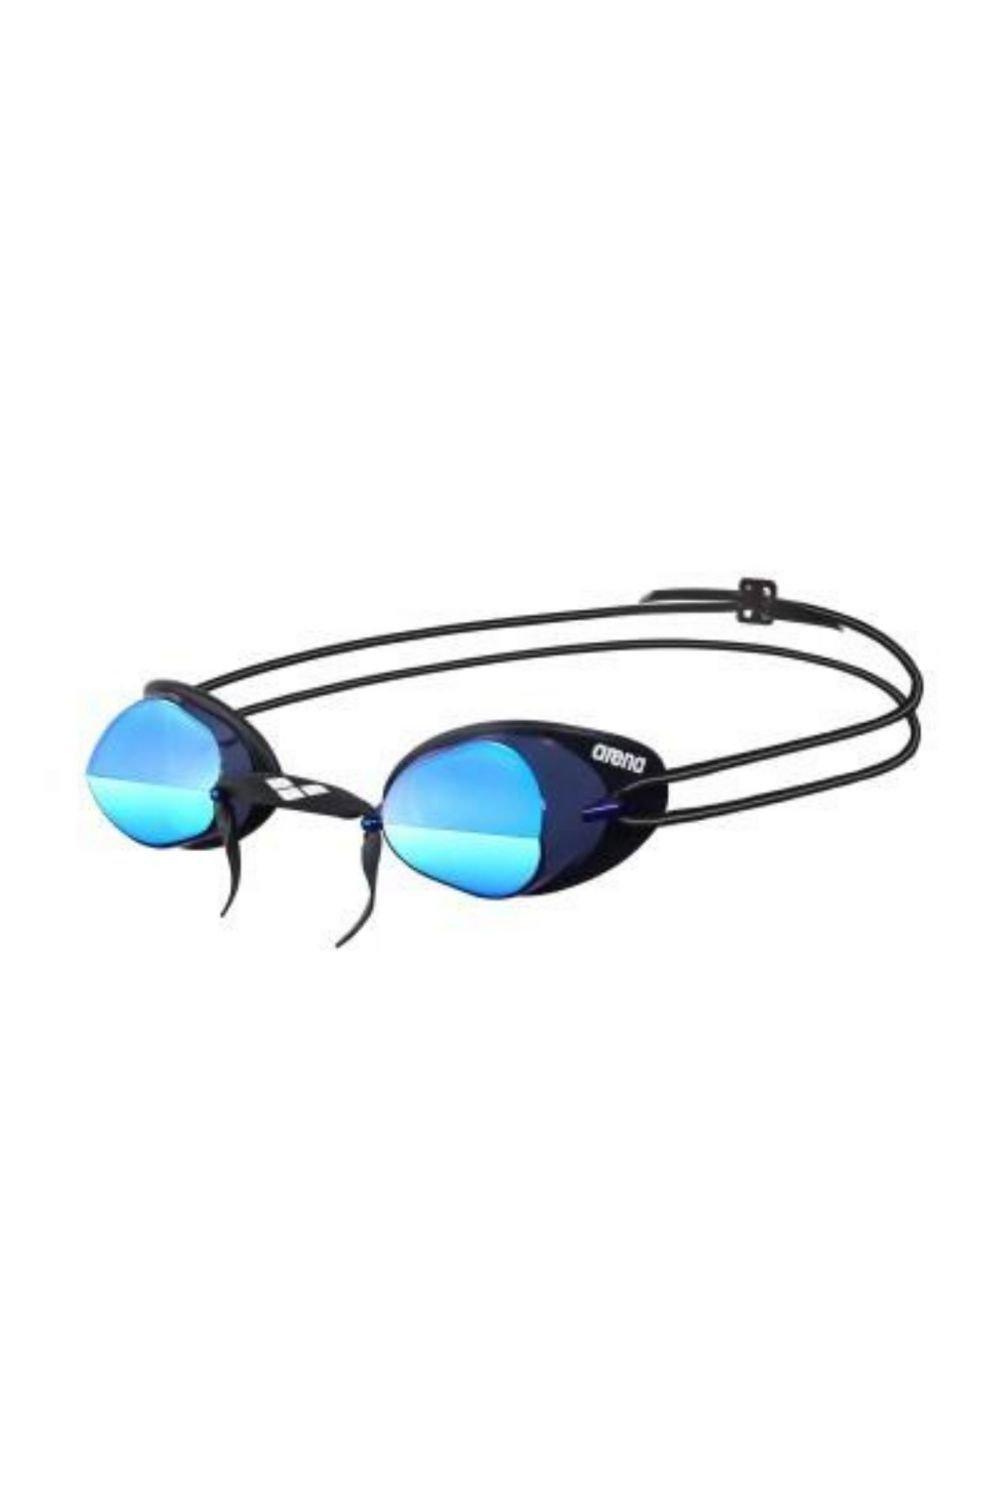 Очки для плавания Swedix Mirror - Зеркальные линзы Arena, синий очки для плавания стартовые arena swedix черные